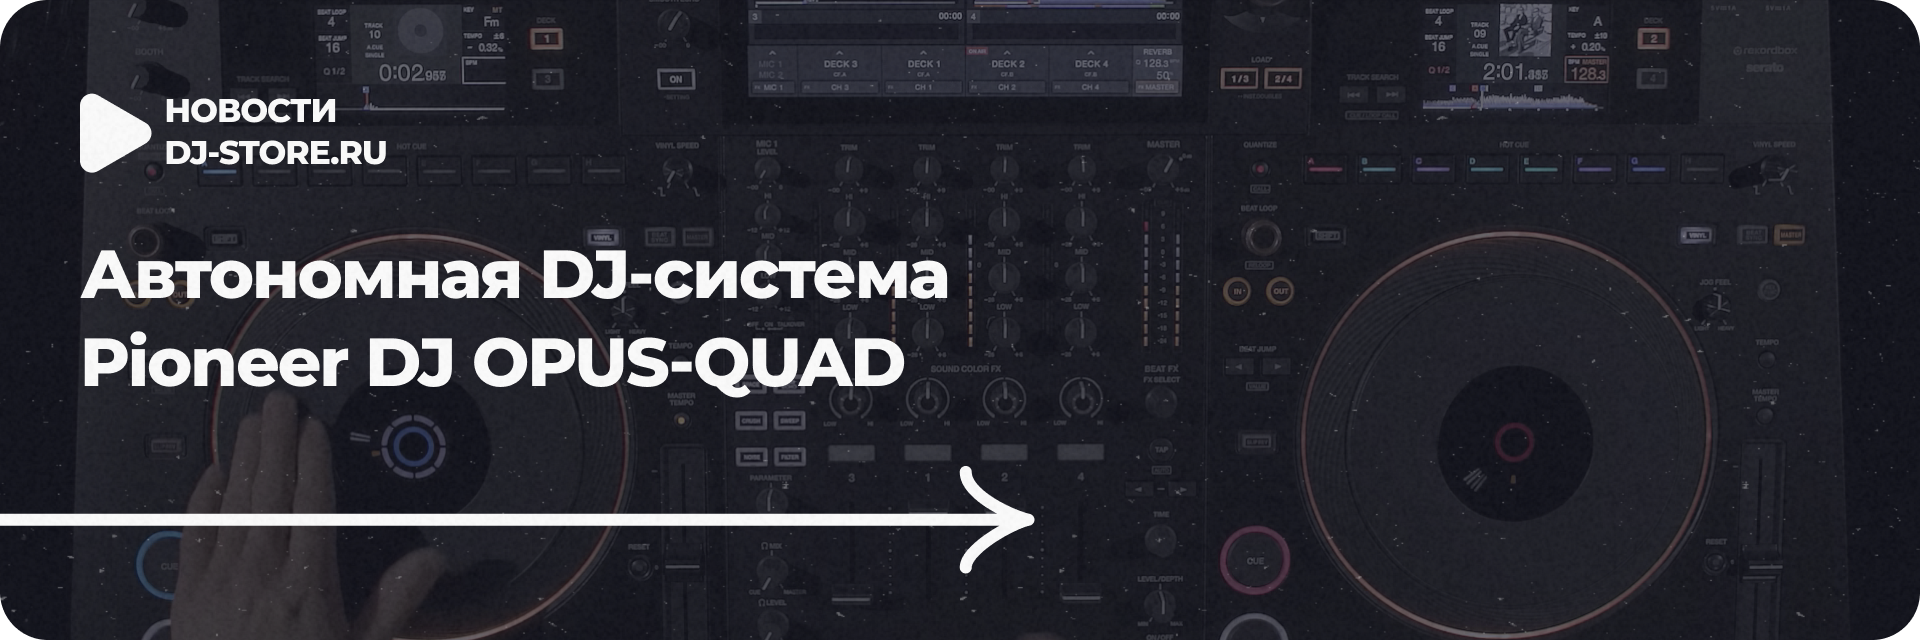 Автономная DJ-система Pioneer DJ OPUS-QUAD